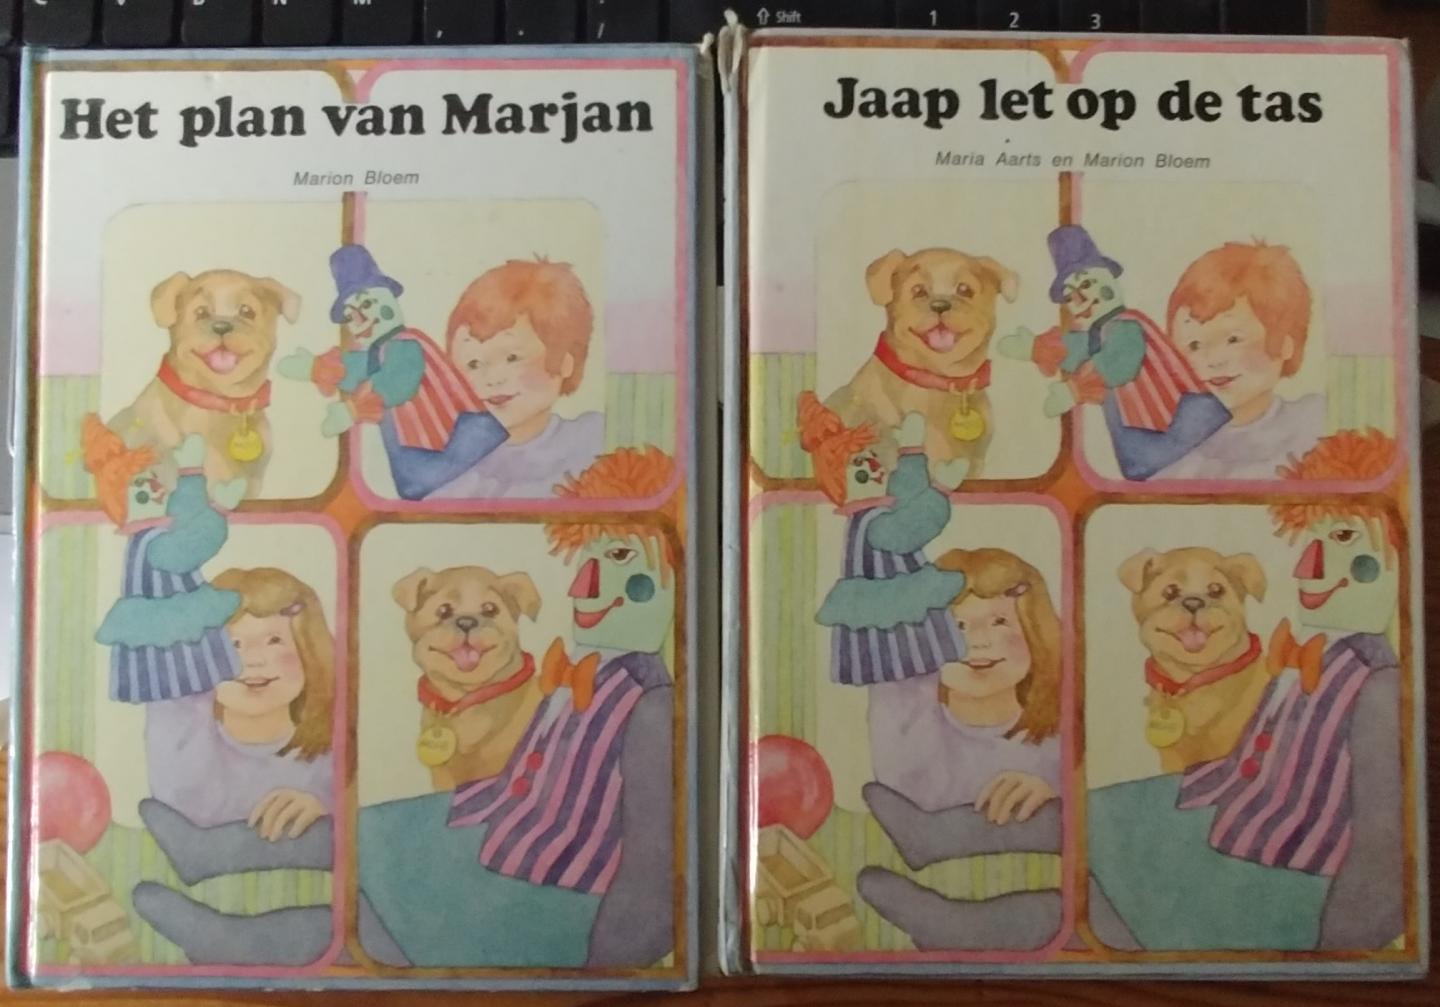 Aarts, Maria / Bloem, Marion - Jaap let op de tas + Het plan van Marjan